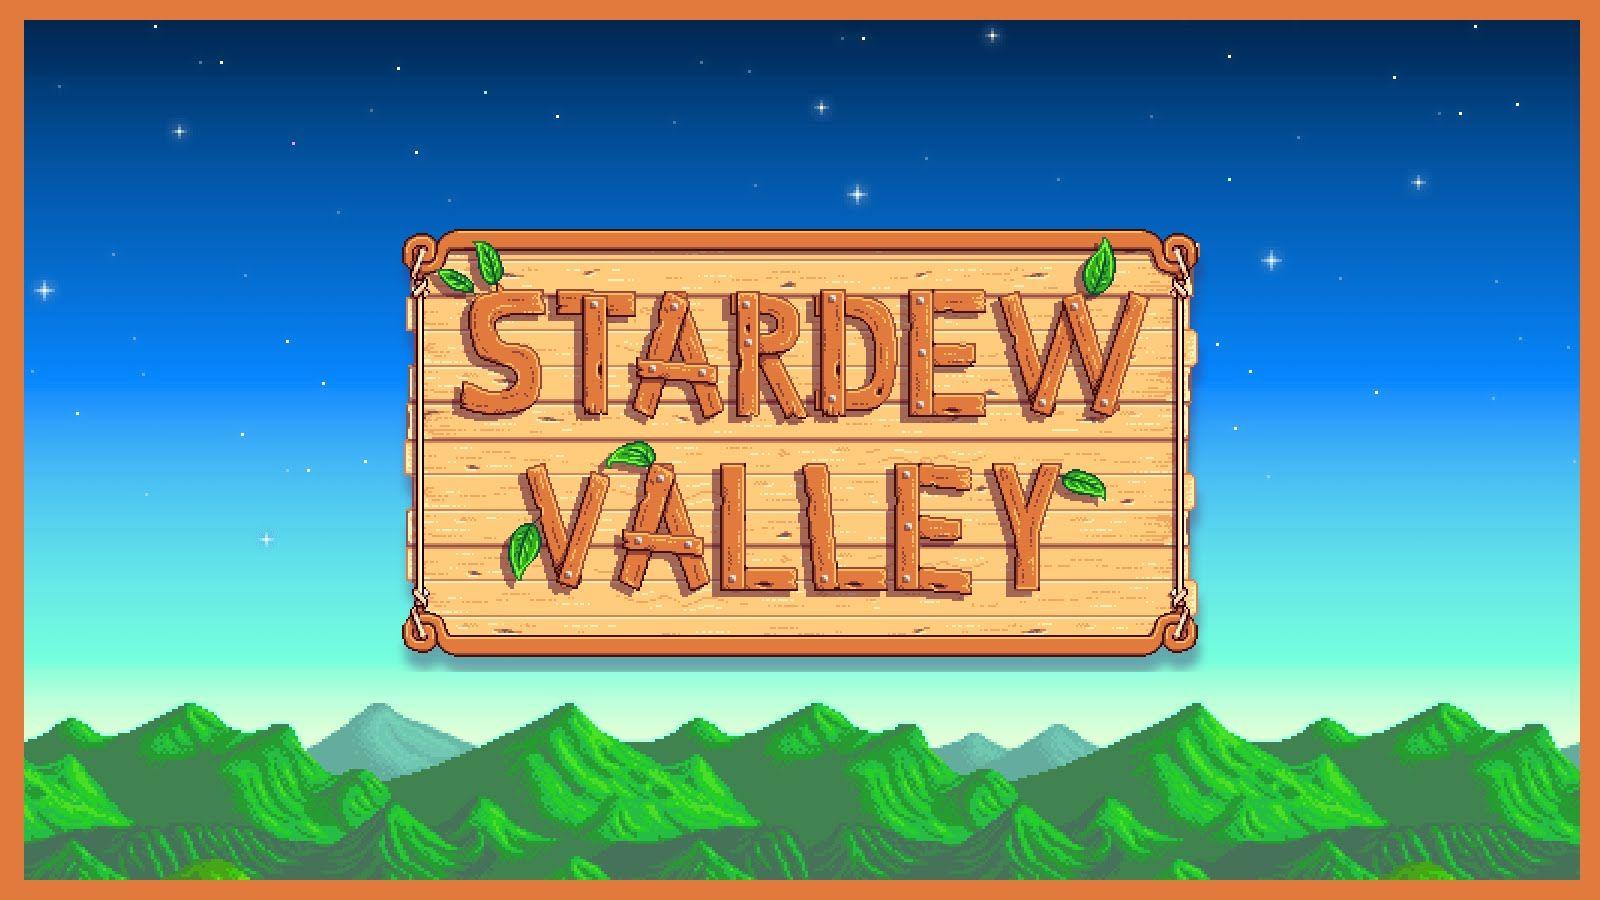 Stardew Valley: Where to Find Dwarf